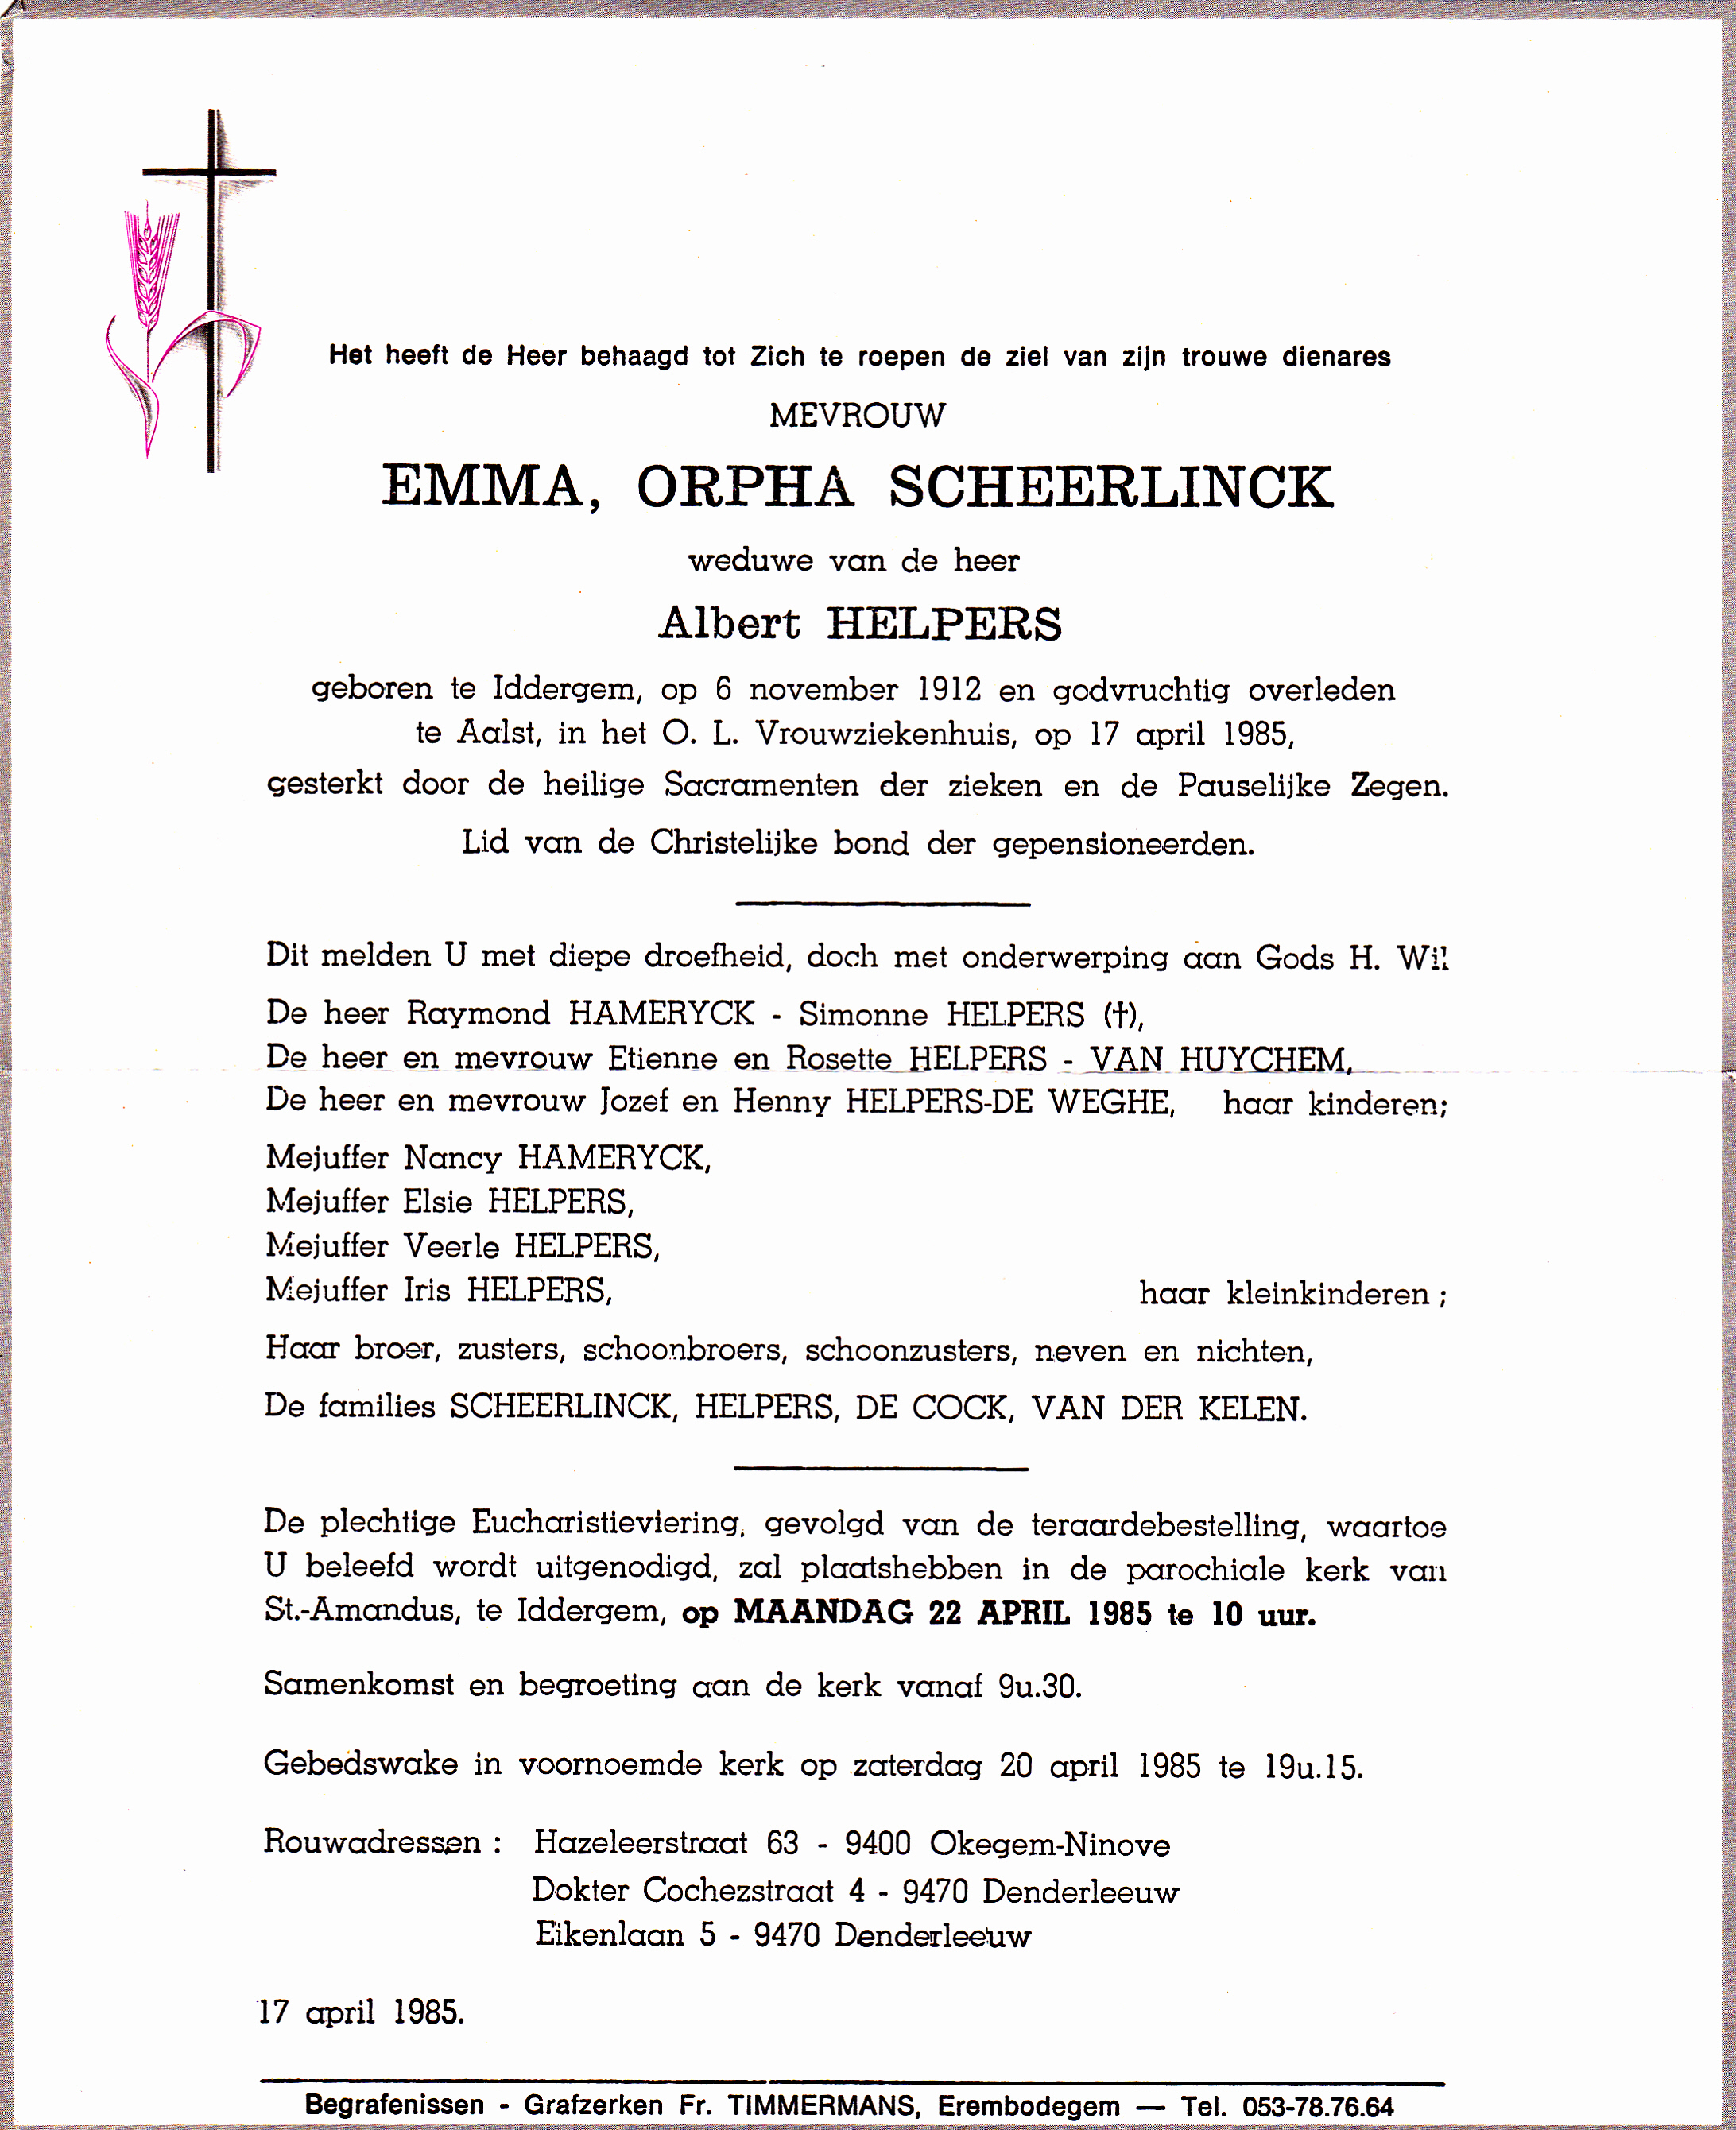 Scheerlinck Emma Orpha   